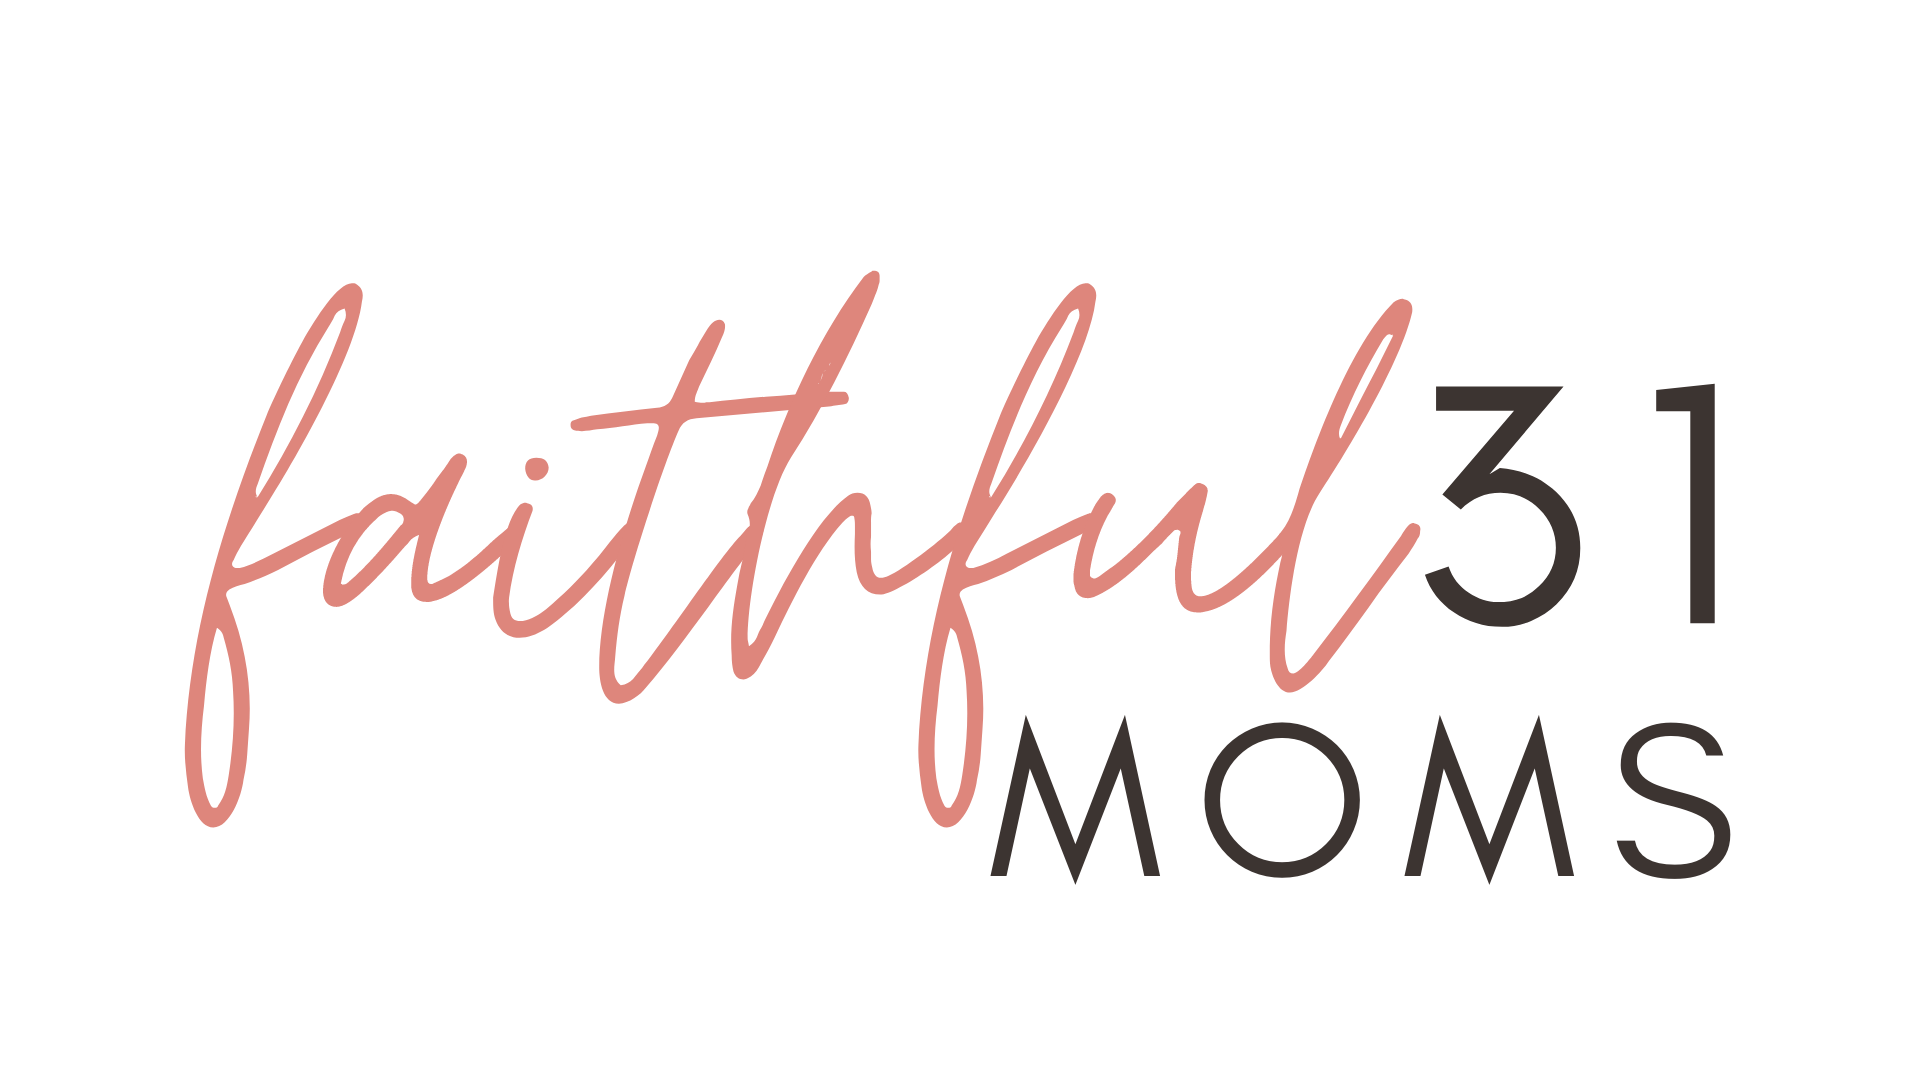 Faithful 31 Moms